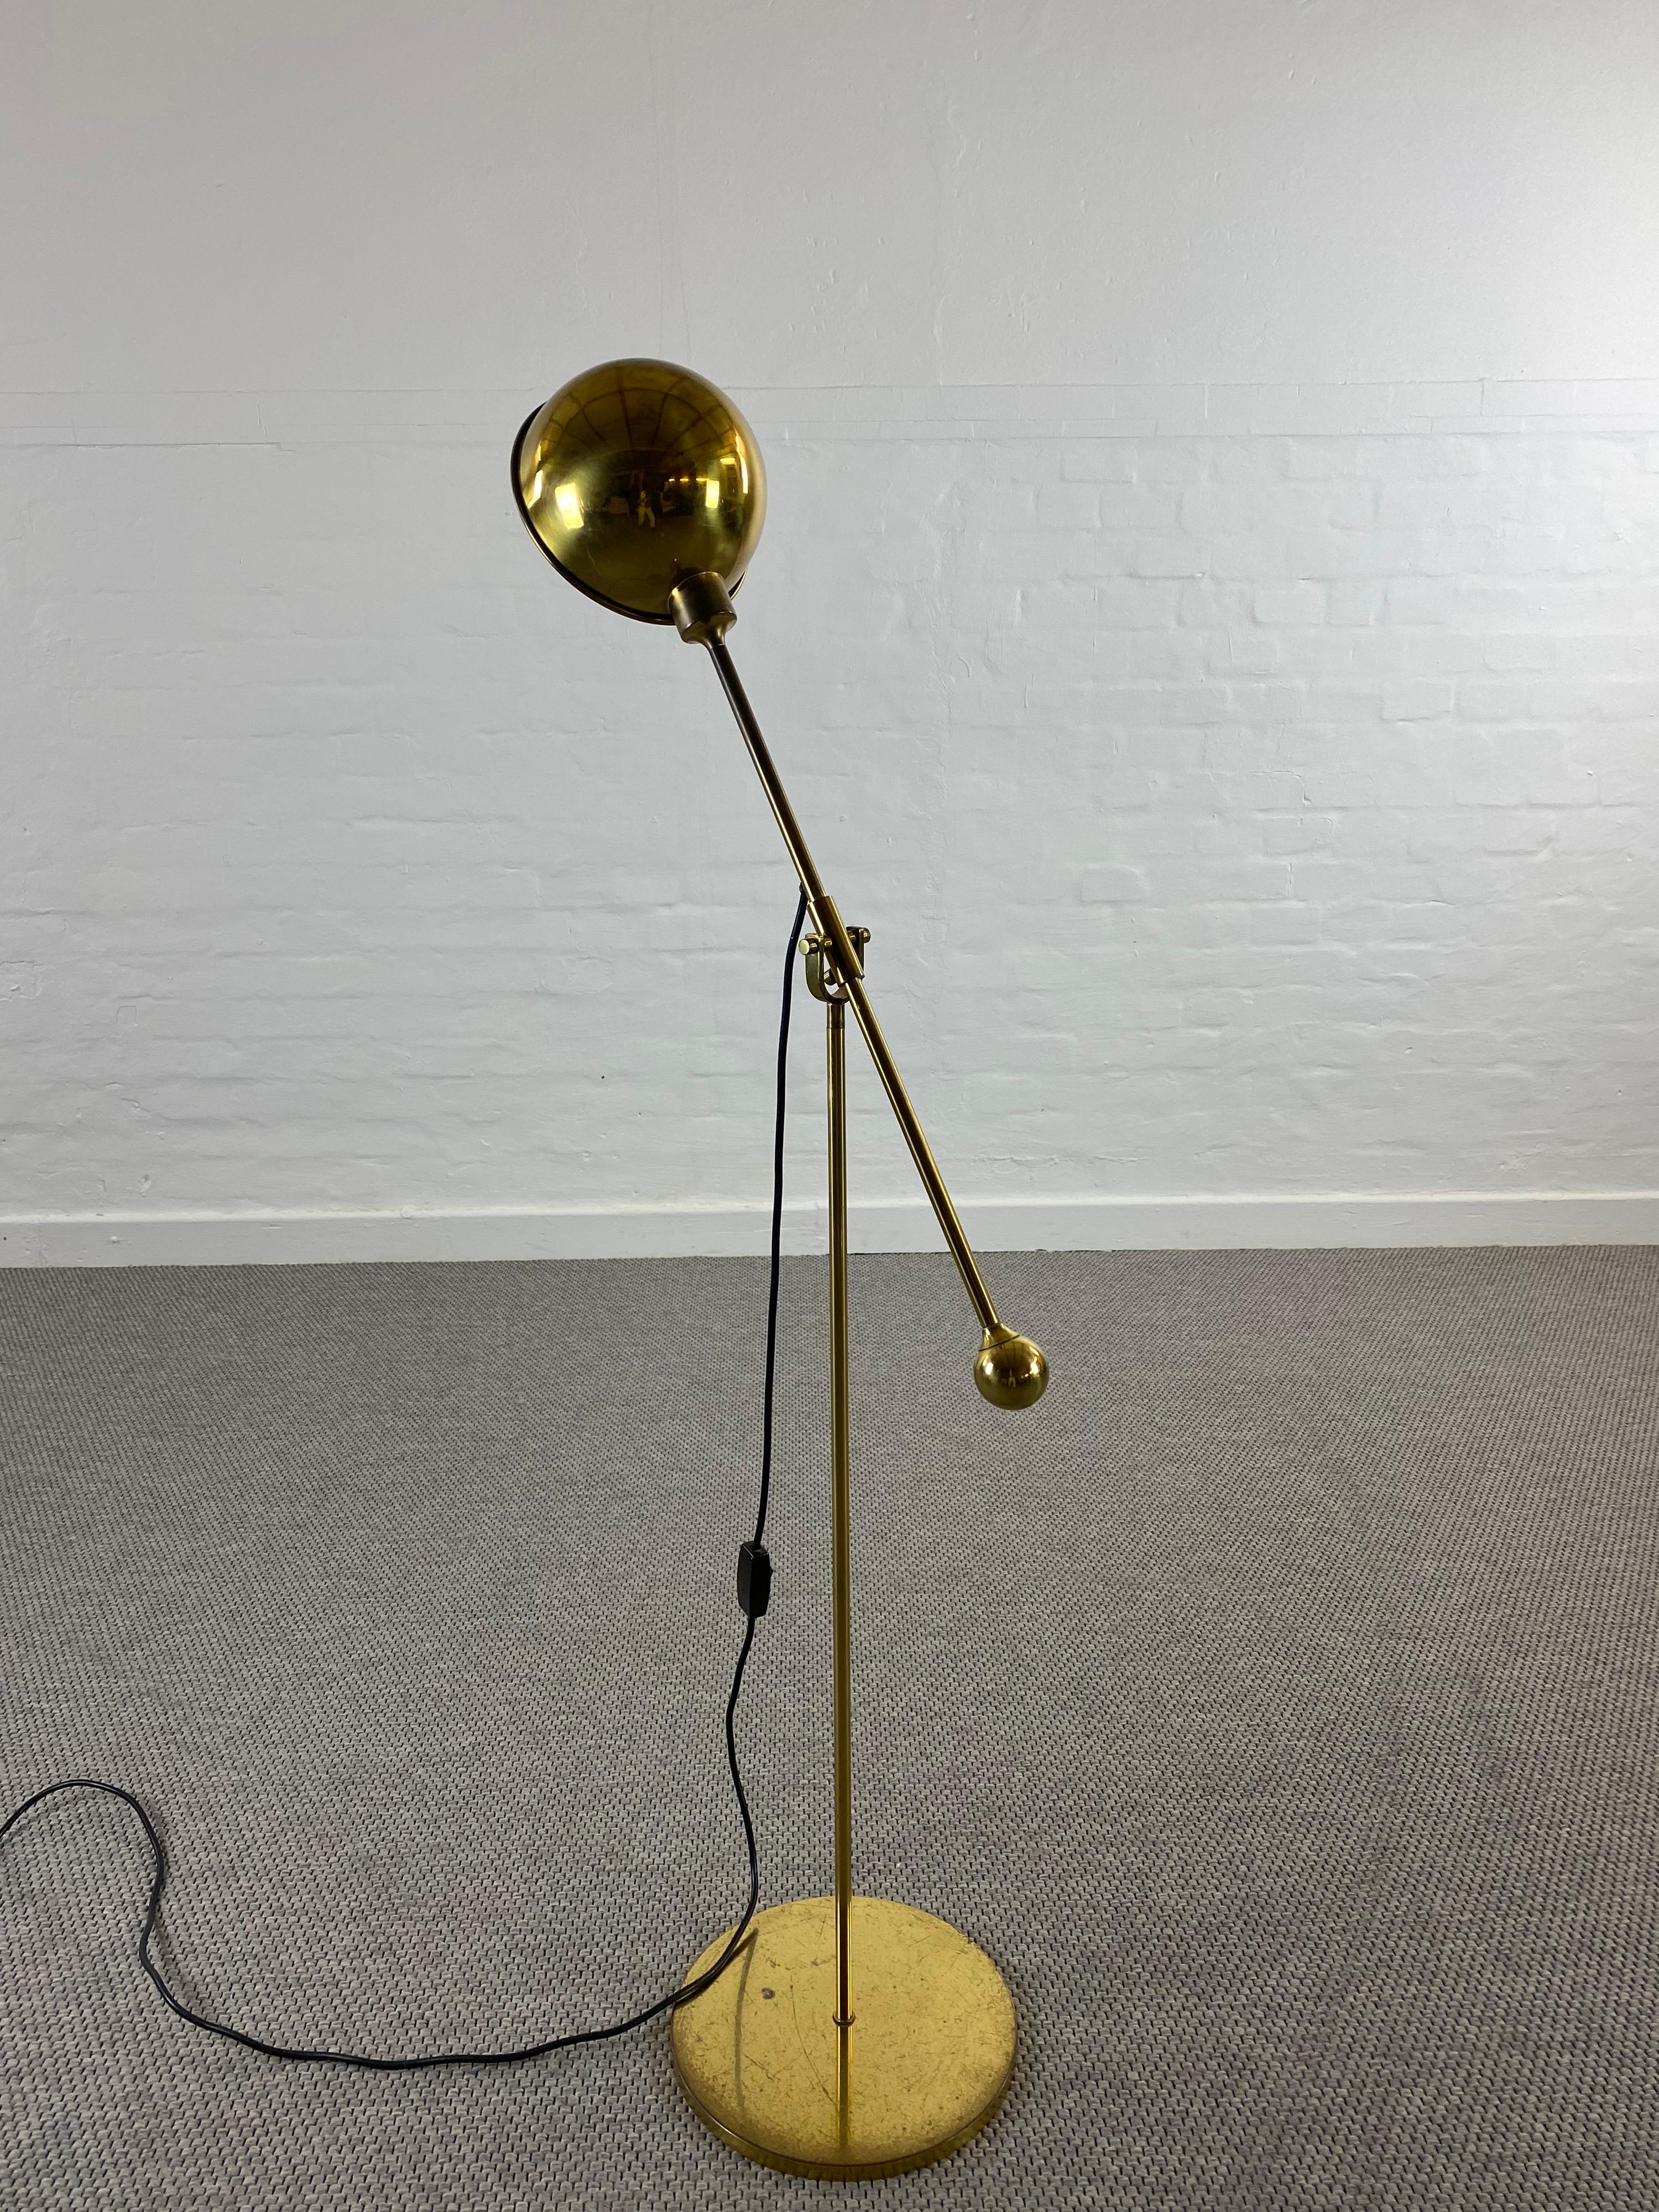 Un très rare et ancien lampadaire en laiton massif avec contrepoids par Florian Schulz .
L'abat-jour et le bras de la lampe peuvent être tournés pour permettre de changer la direction de la lumière.

Grâce au bras pivotant de la lampe, la hauteur